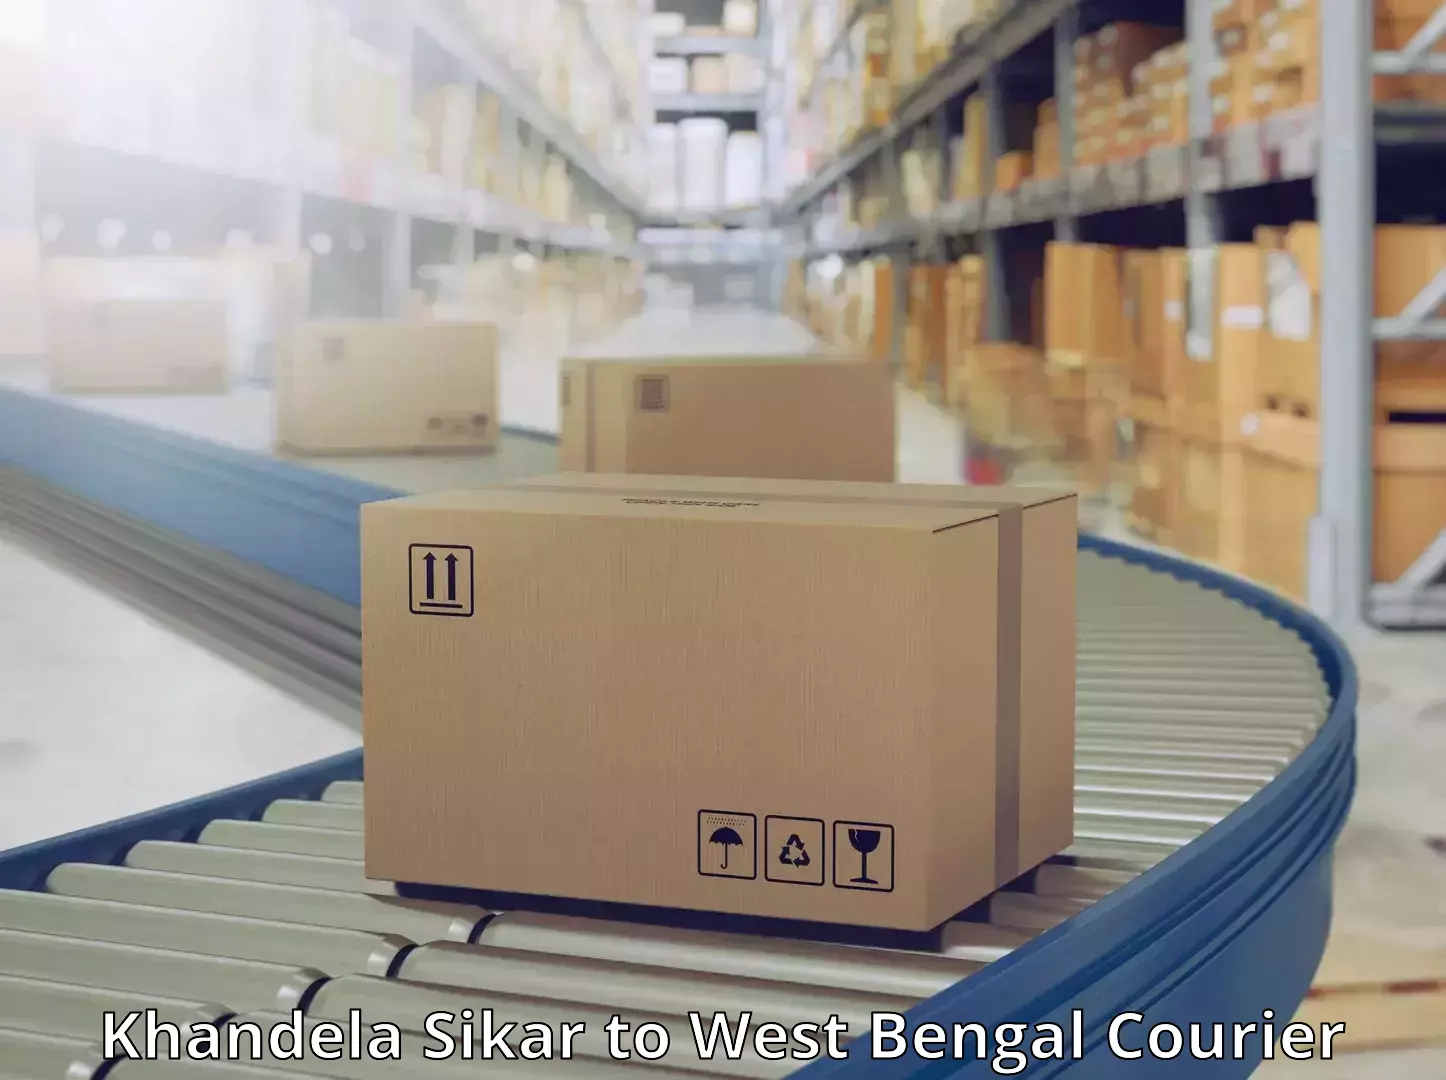 On-call courier service Khandela Sikar to Kolkata Port